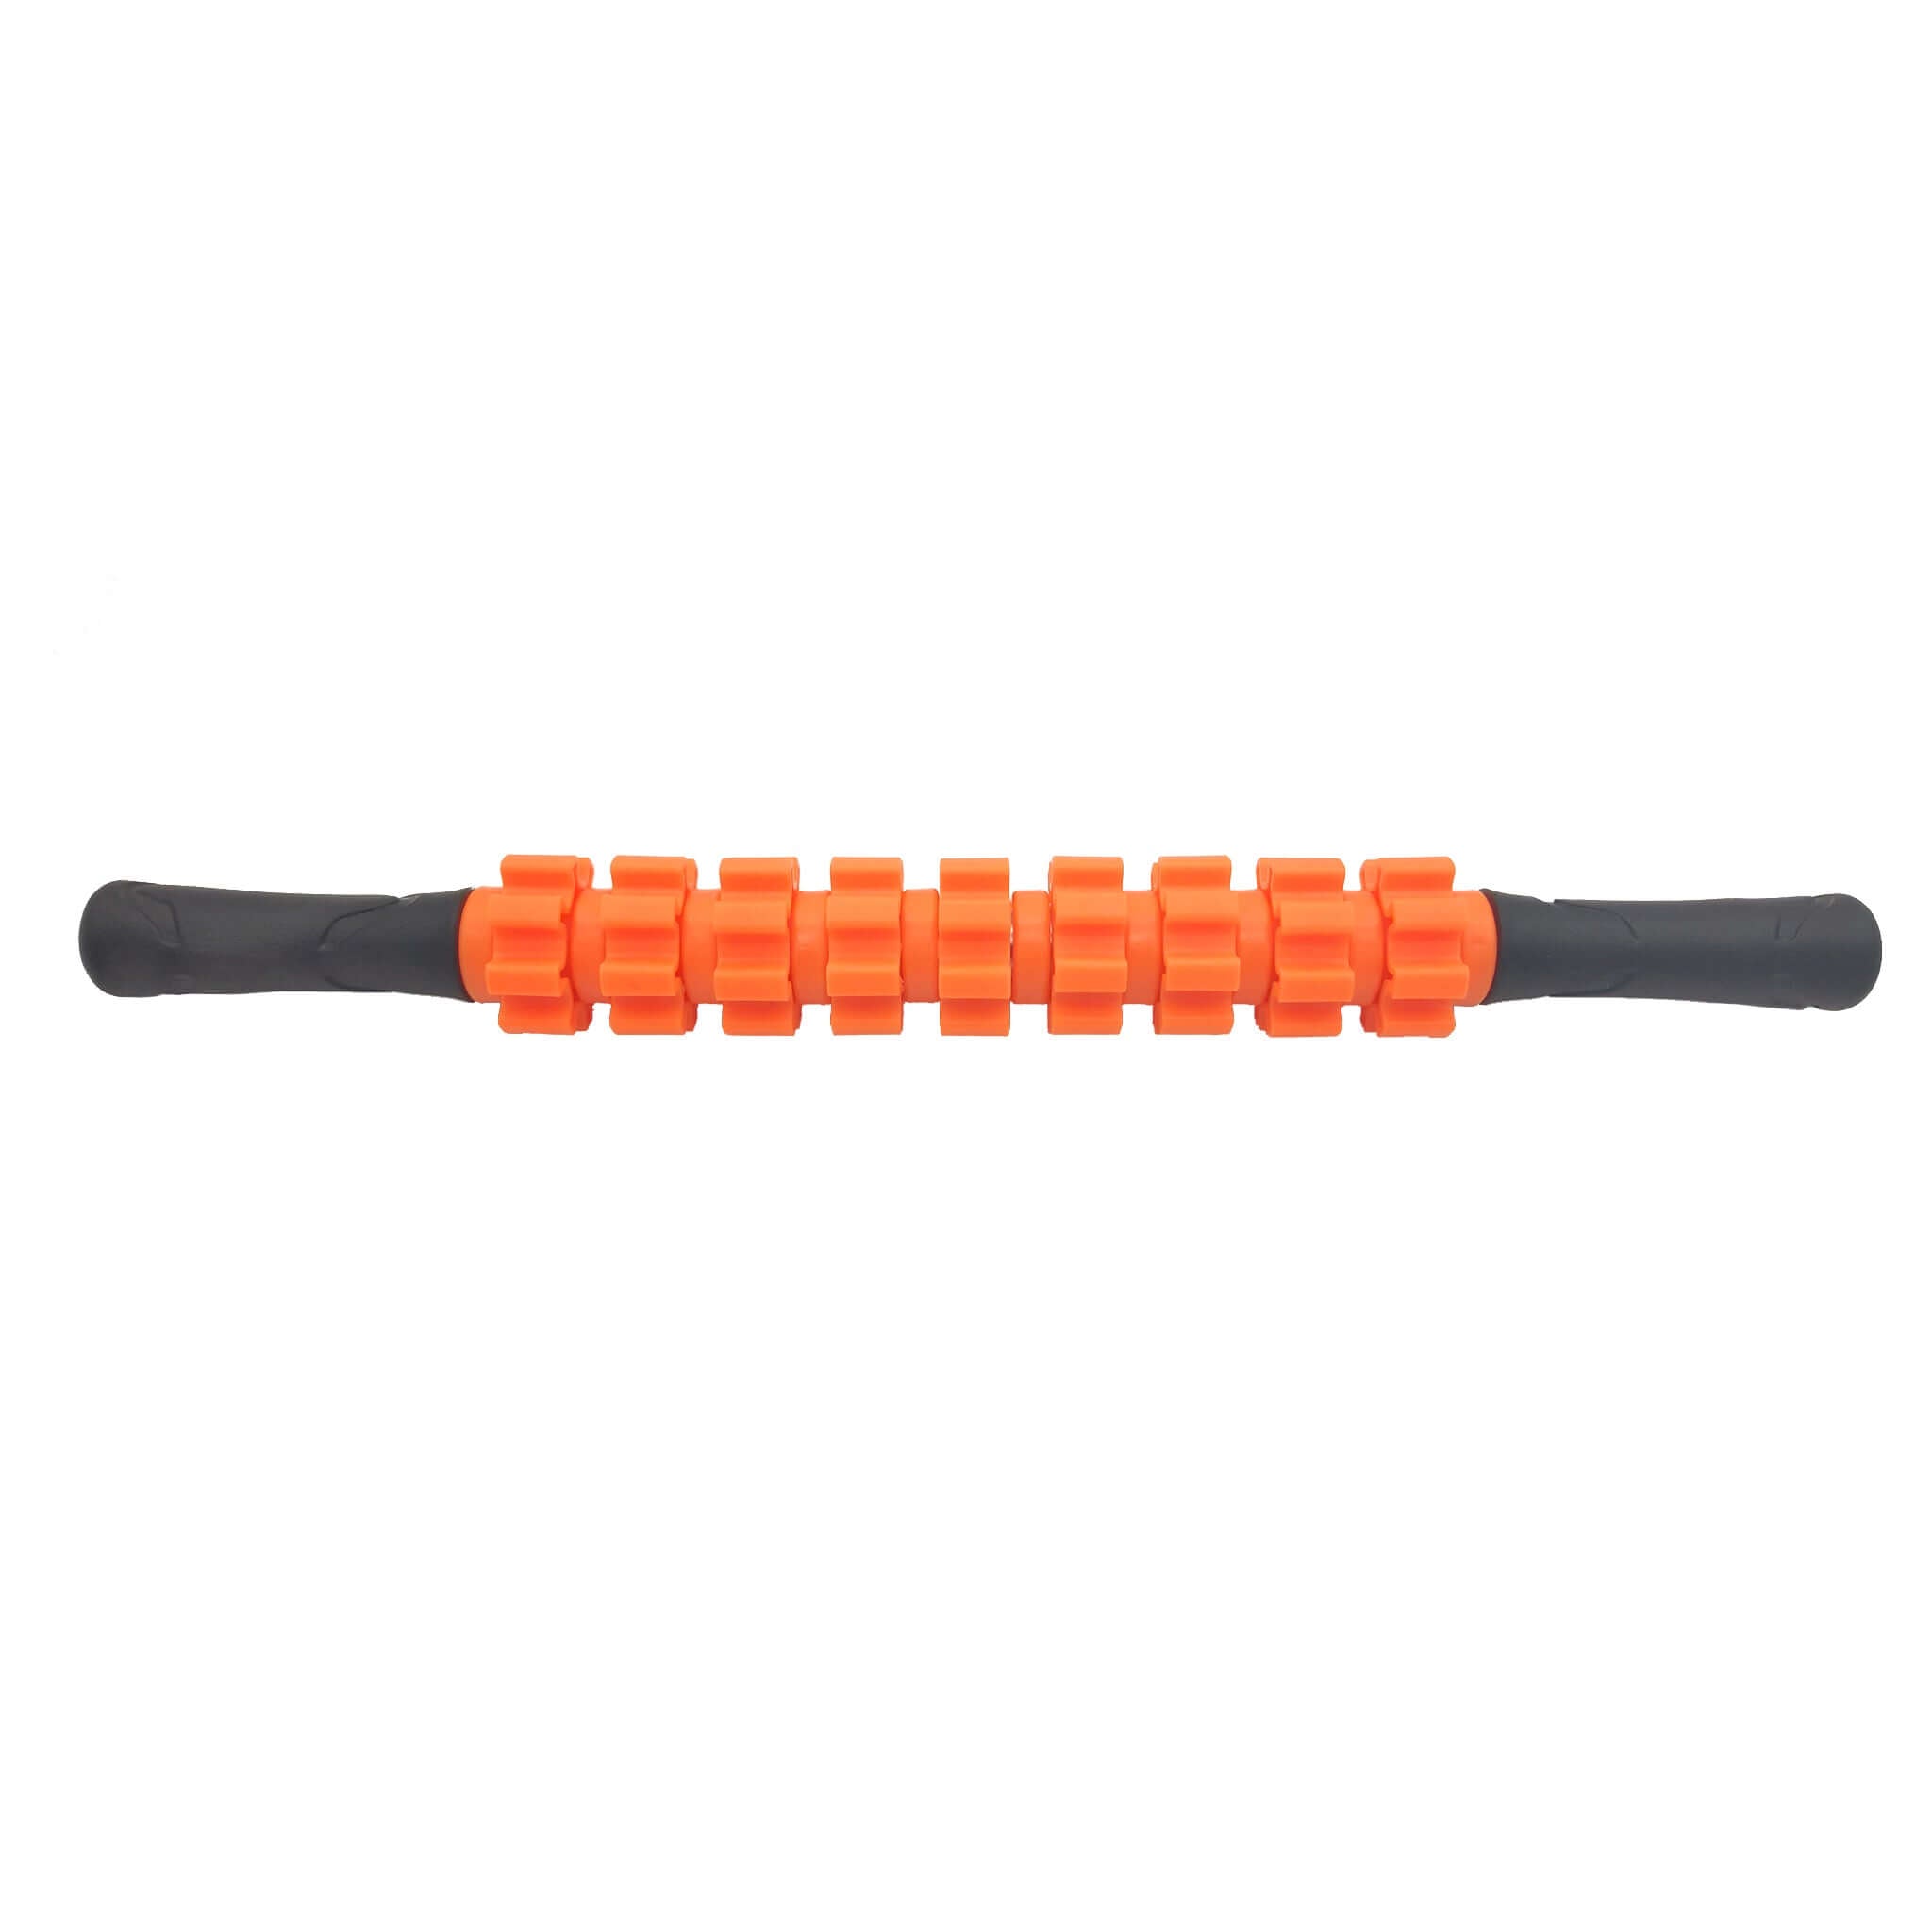 M2 Handheld Massage Roller Stick - Orange | INSOURCE